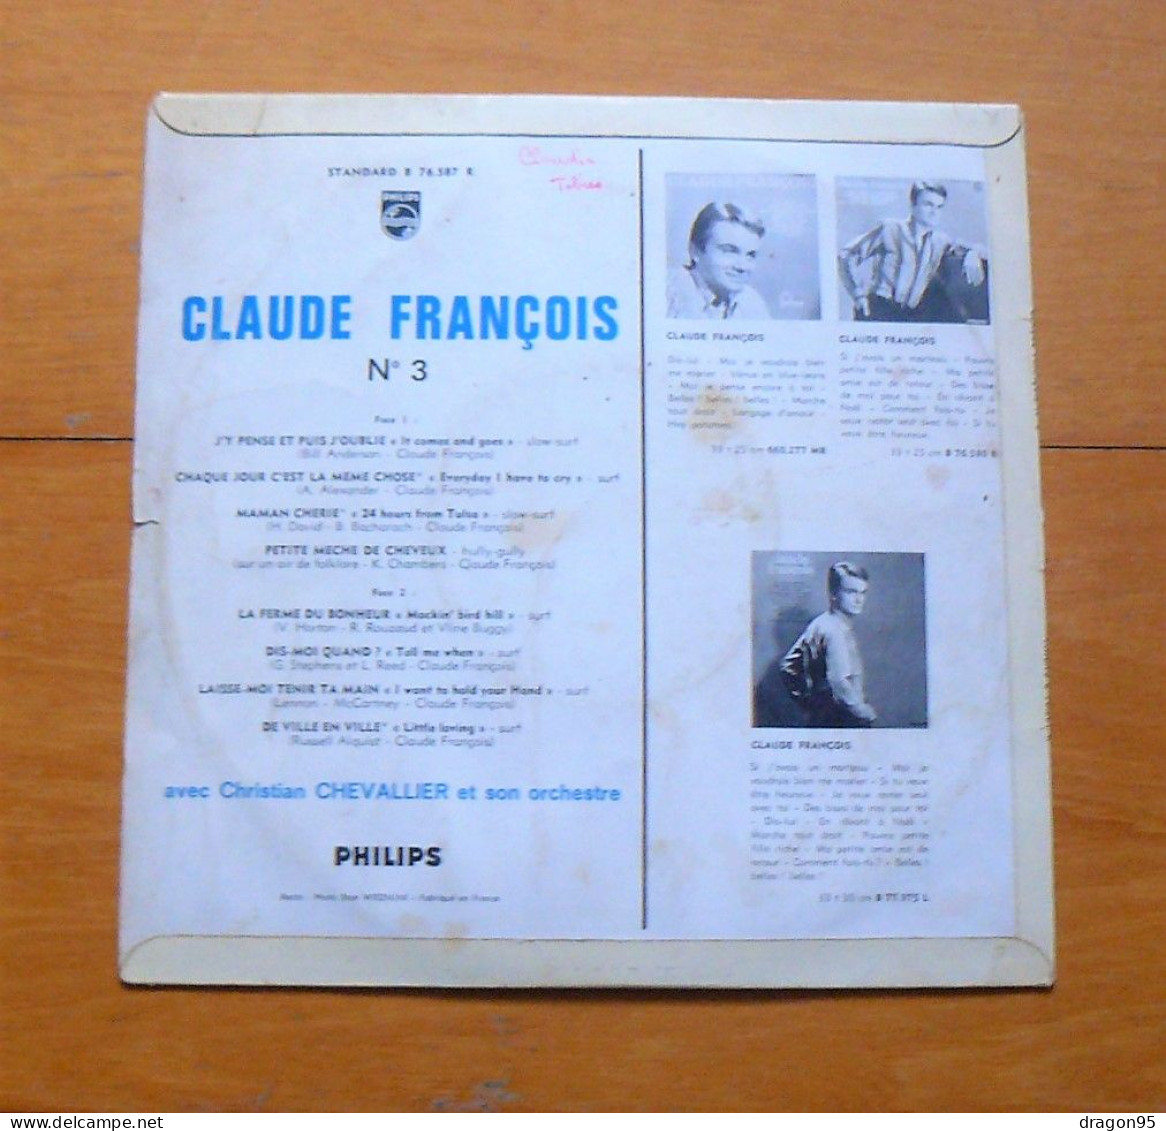 25 Cm Claude FRANCOIS : J'y Pense Et Puis J'oublie - Philips B 76.587 R - France - Altri - Francese